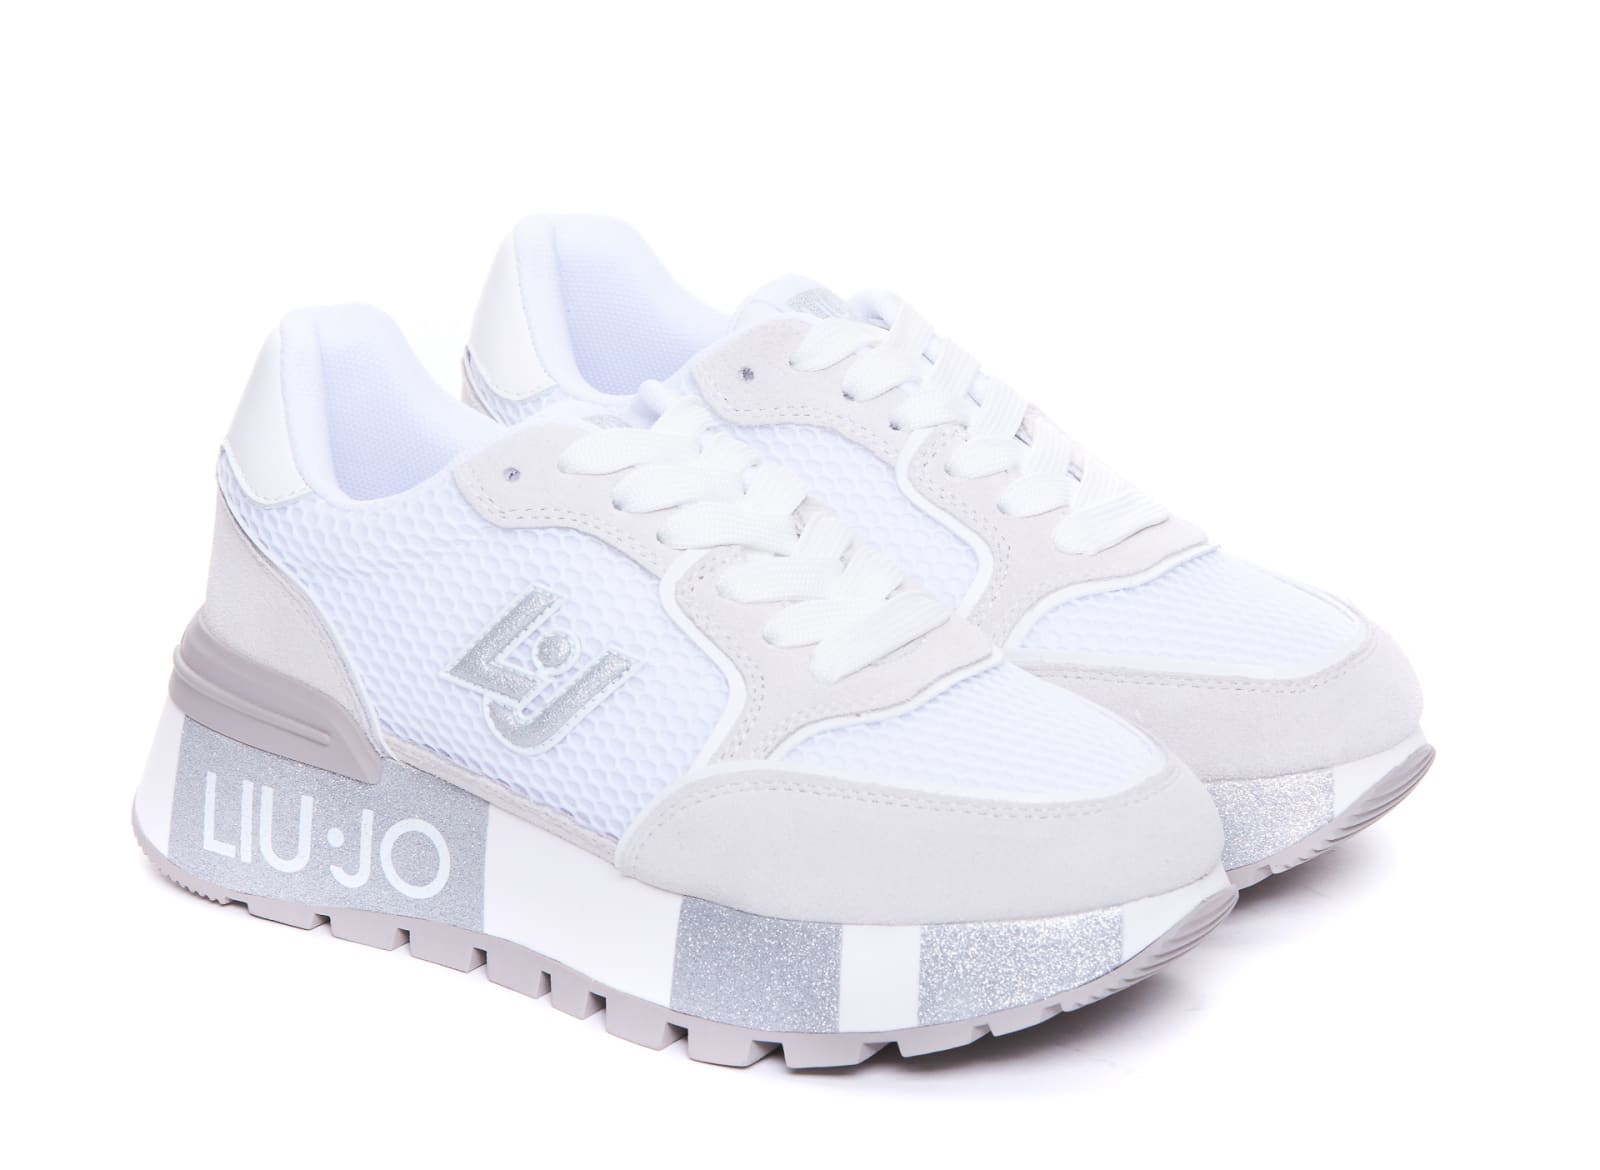 Shop Liu •jo Amazing Sneakers In White